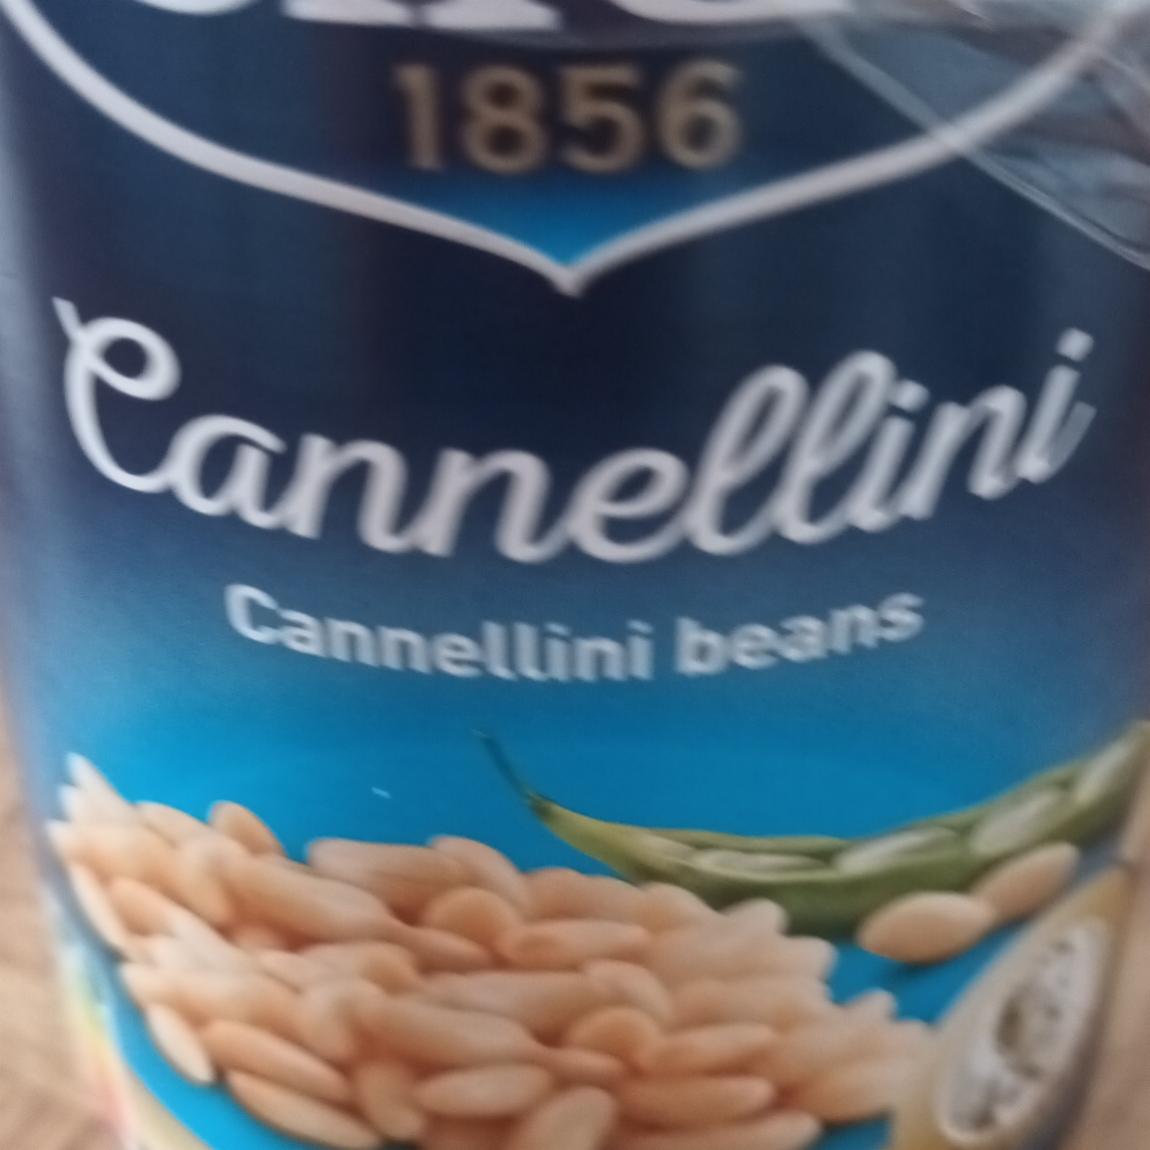 Fotografie - Cannellini Beans Cirio